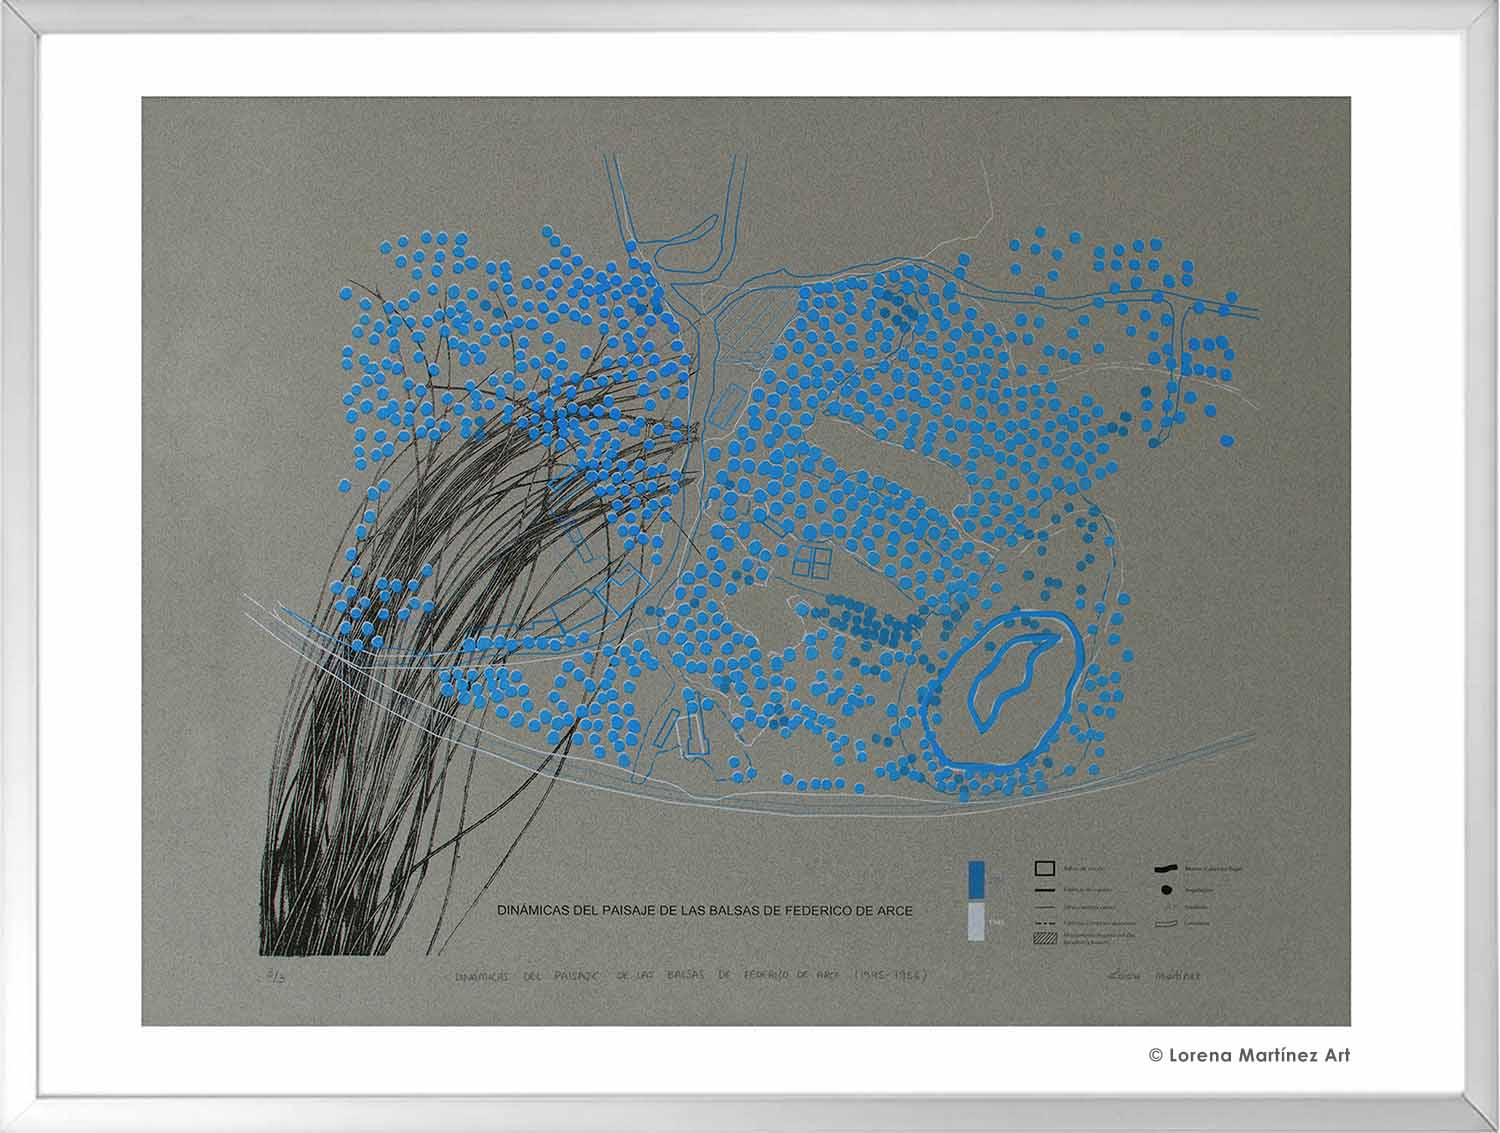 Dinámicas del paisaje de las balsas de Federico de Arce (1945-1956). Litografía Offset sobre papel. 70x80 cm